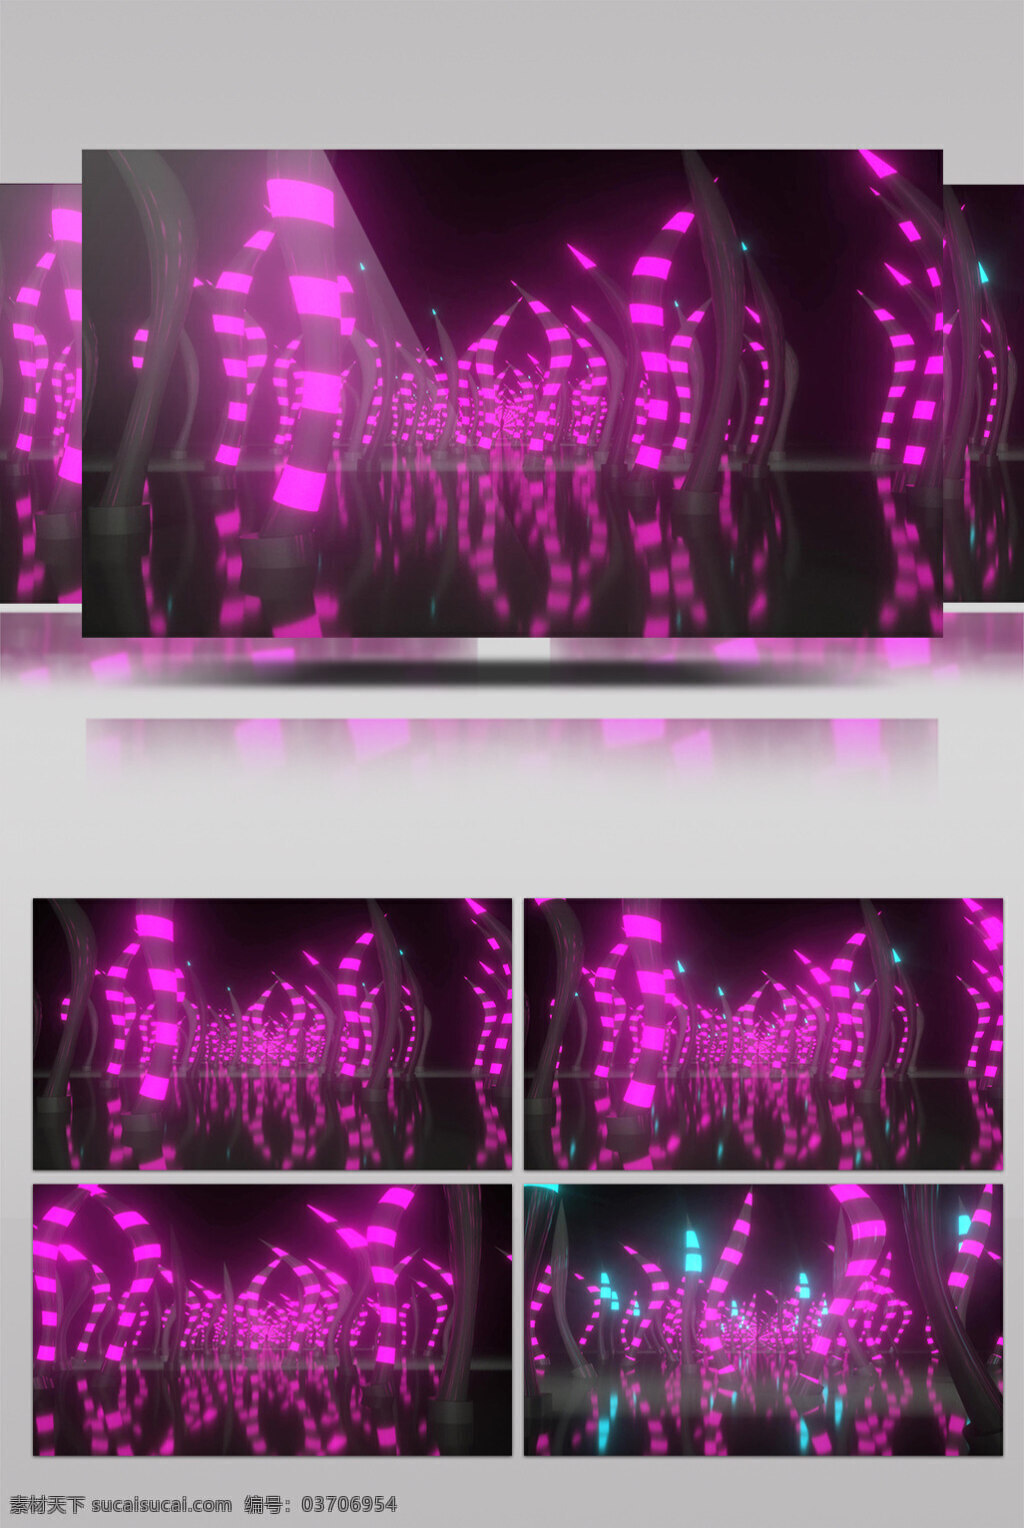 粉 紫色 led 视频 led灯光 粉紫绚丽 星空背景 浩瀚宇宙 动态星光 华丽流转 光芒四射 3d视频素材 特效视频素材